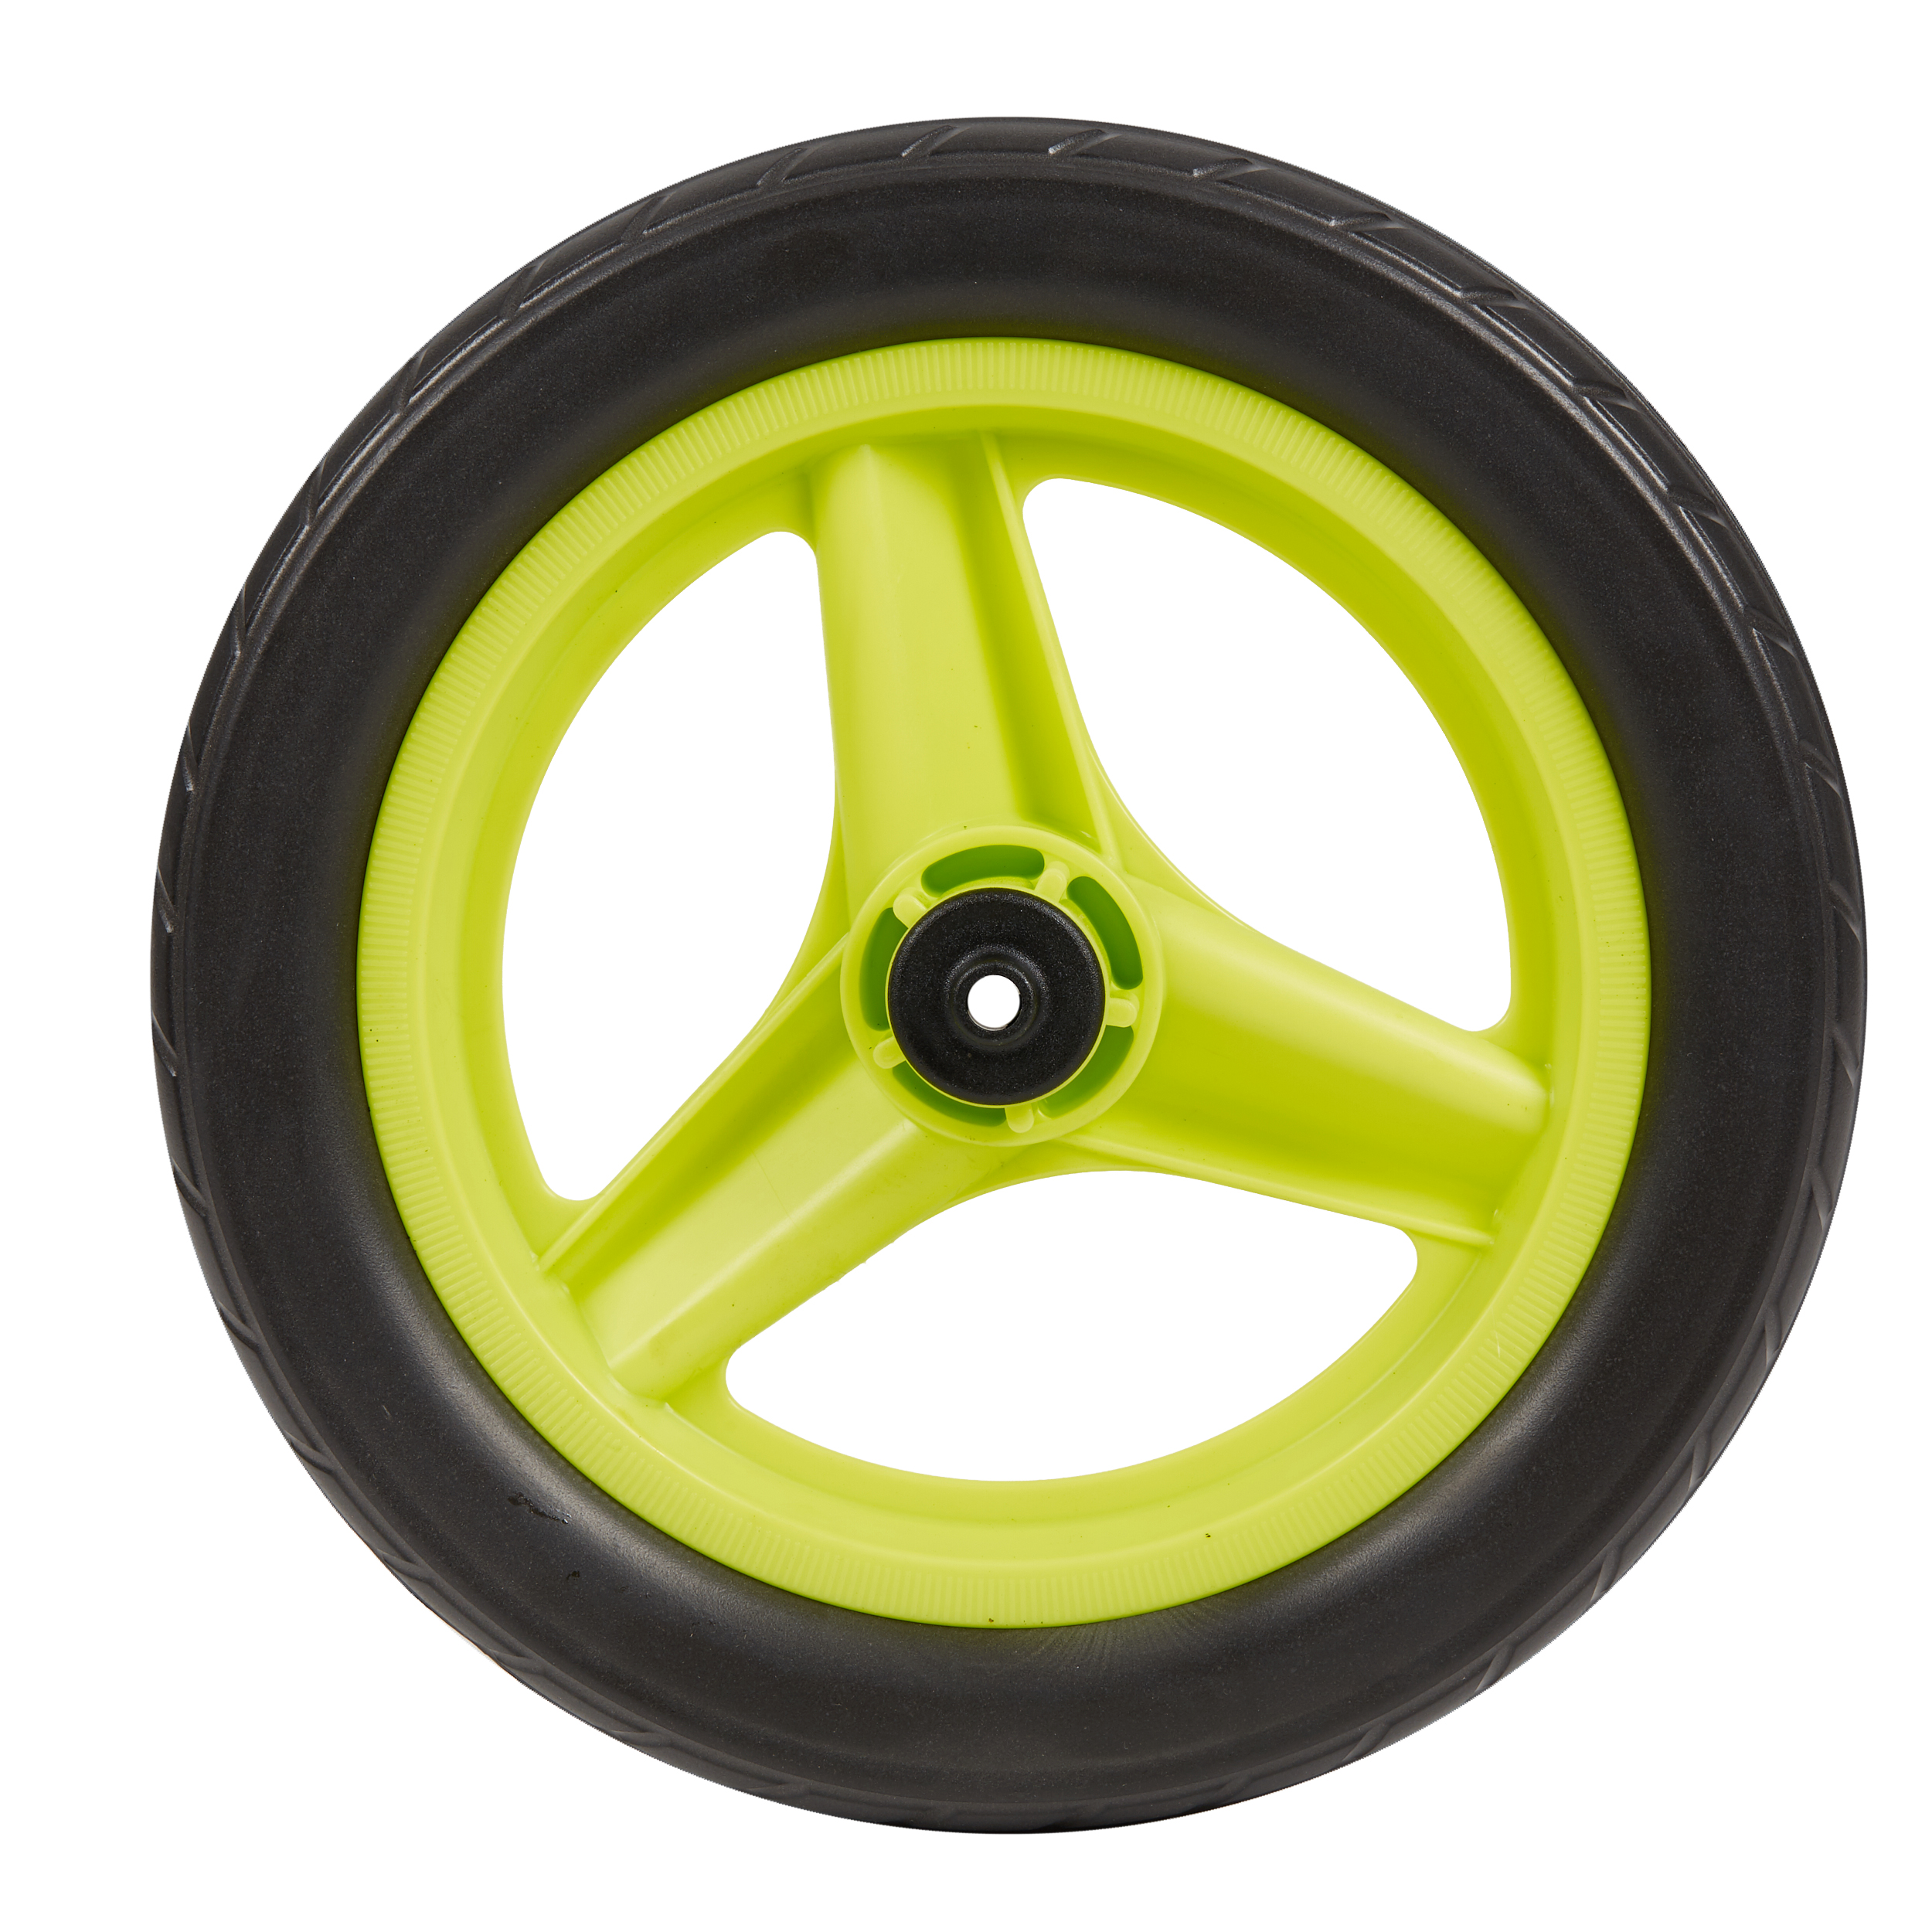 Roue 10 pouces arrière draisienne RUNRIDE verte à pneu noir pour les clubs  et collectivités